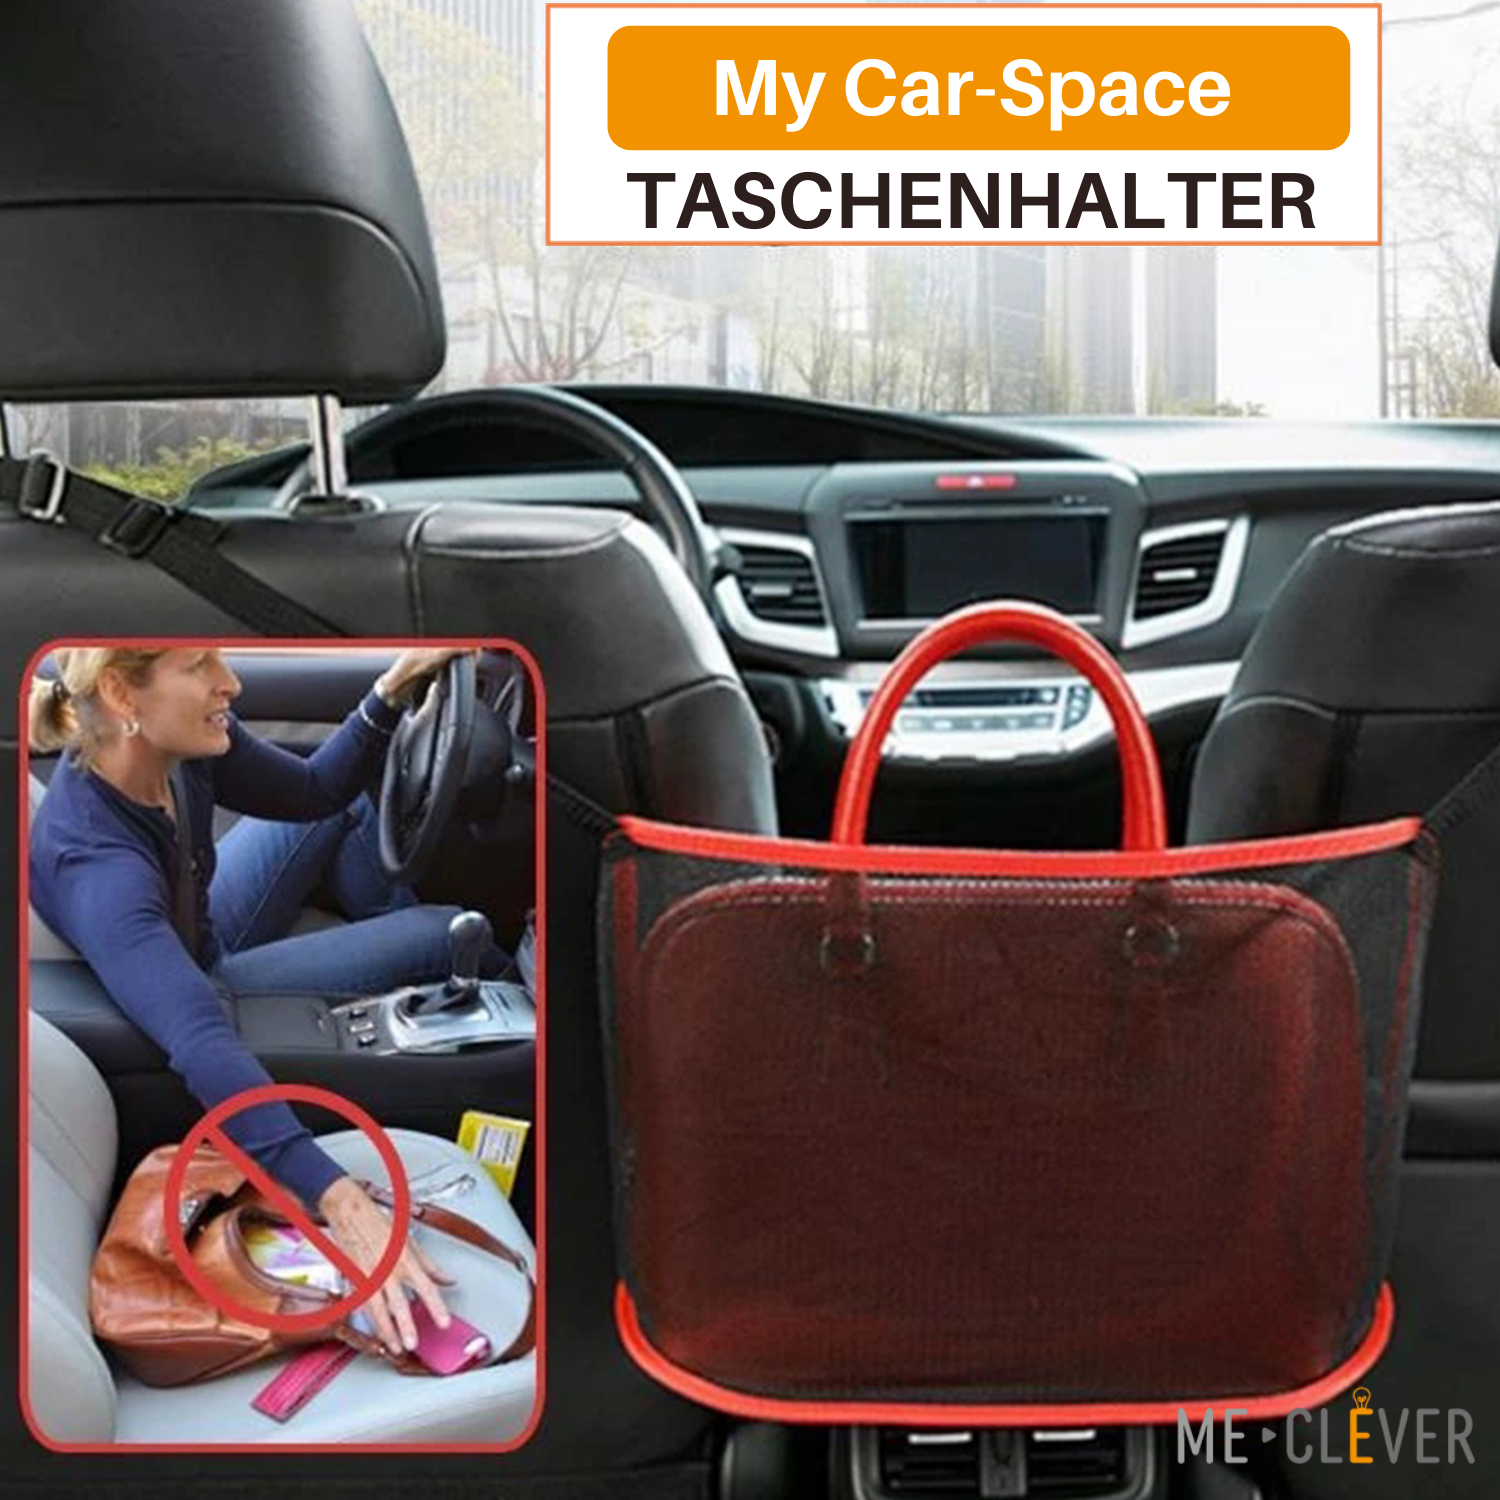 My Car-Space Taschenhalter - griffsicher für eine sichere Fahrt